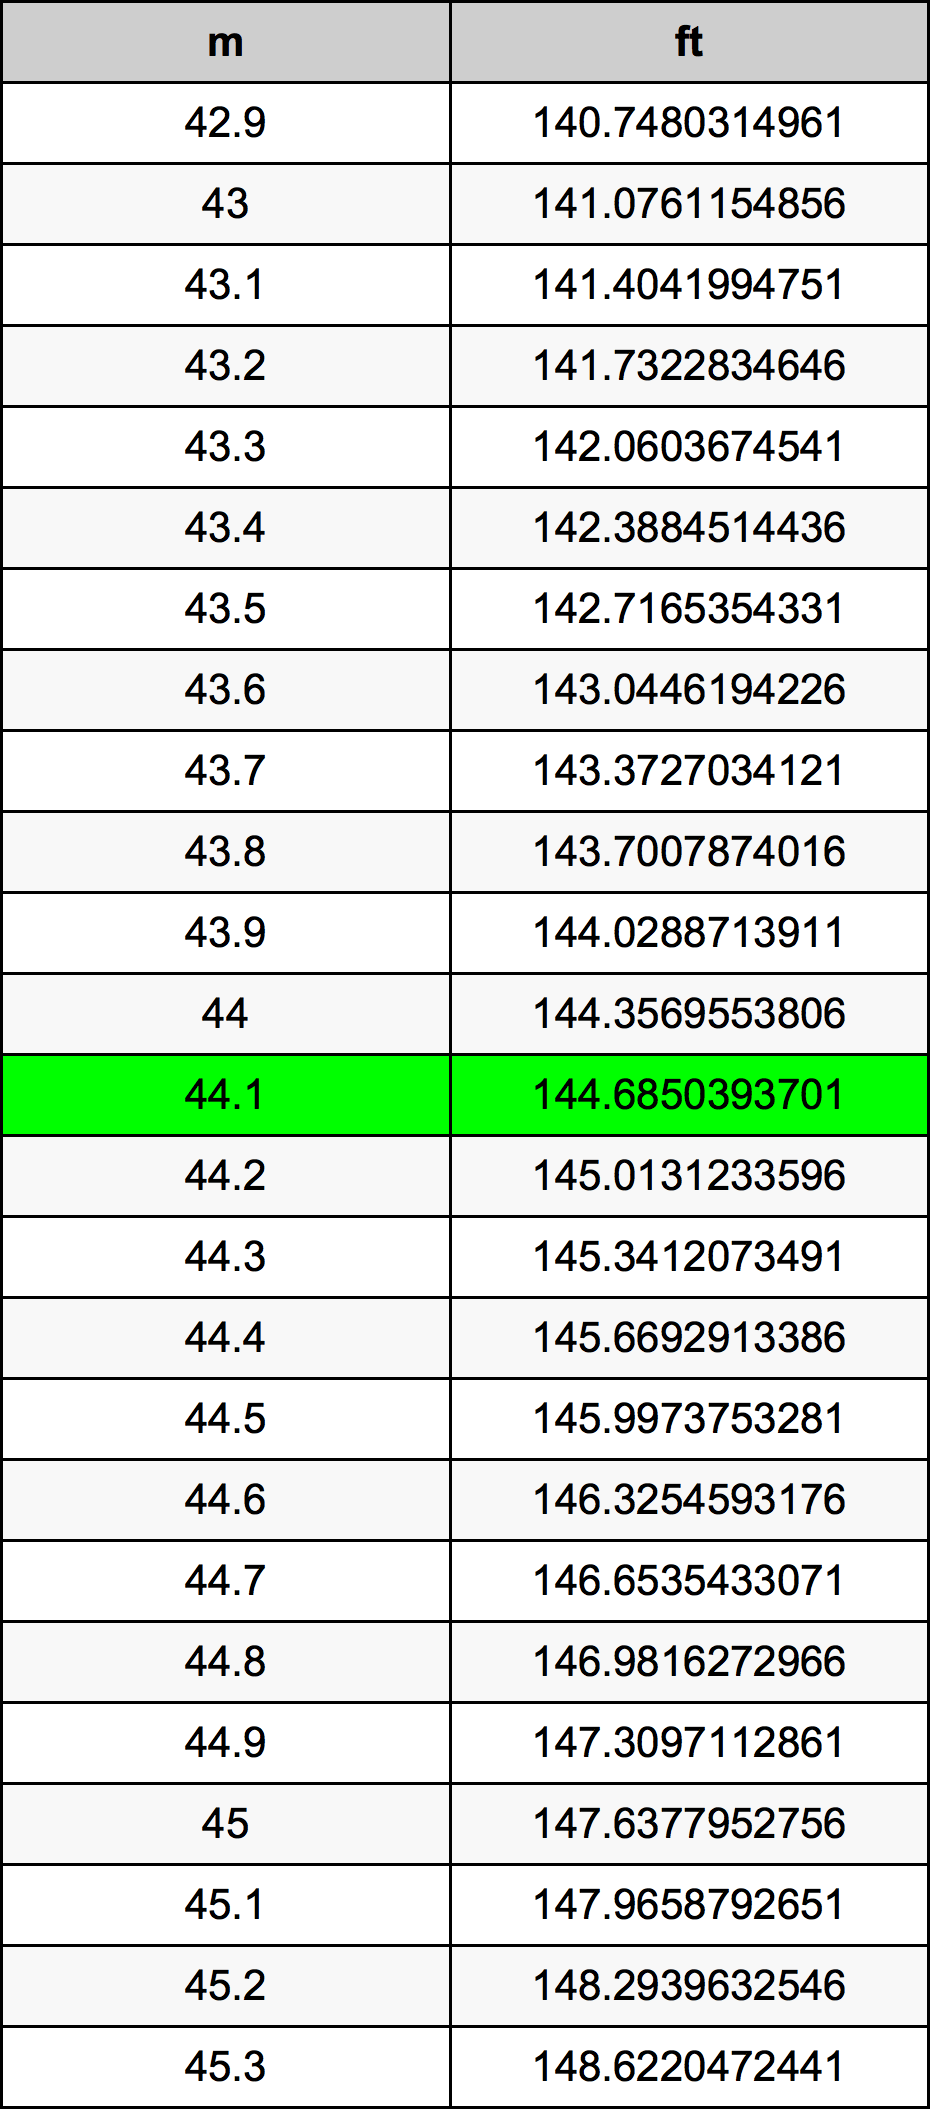 44.1 Metru tabelul de conversie